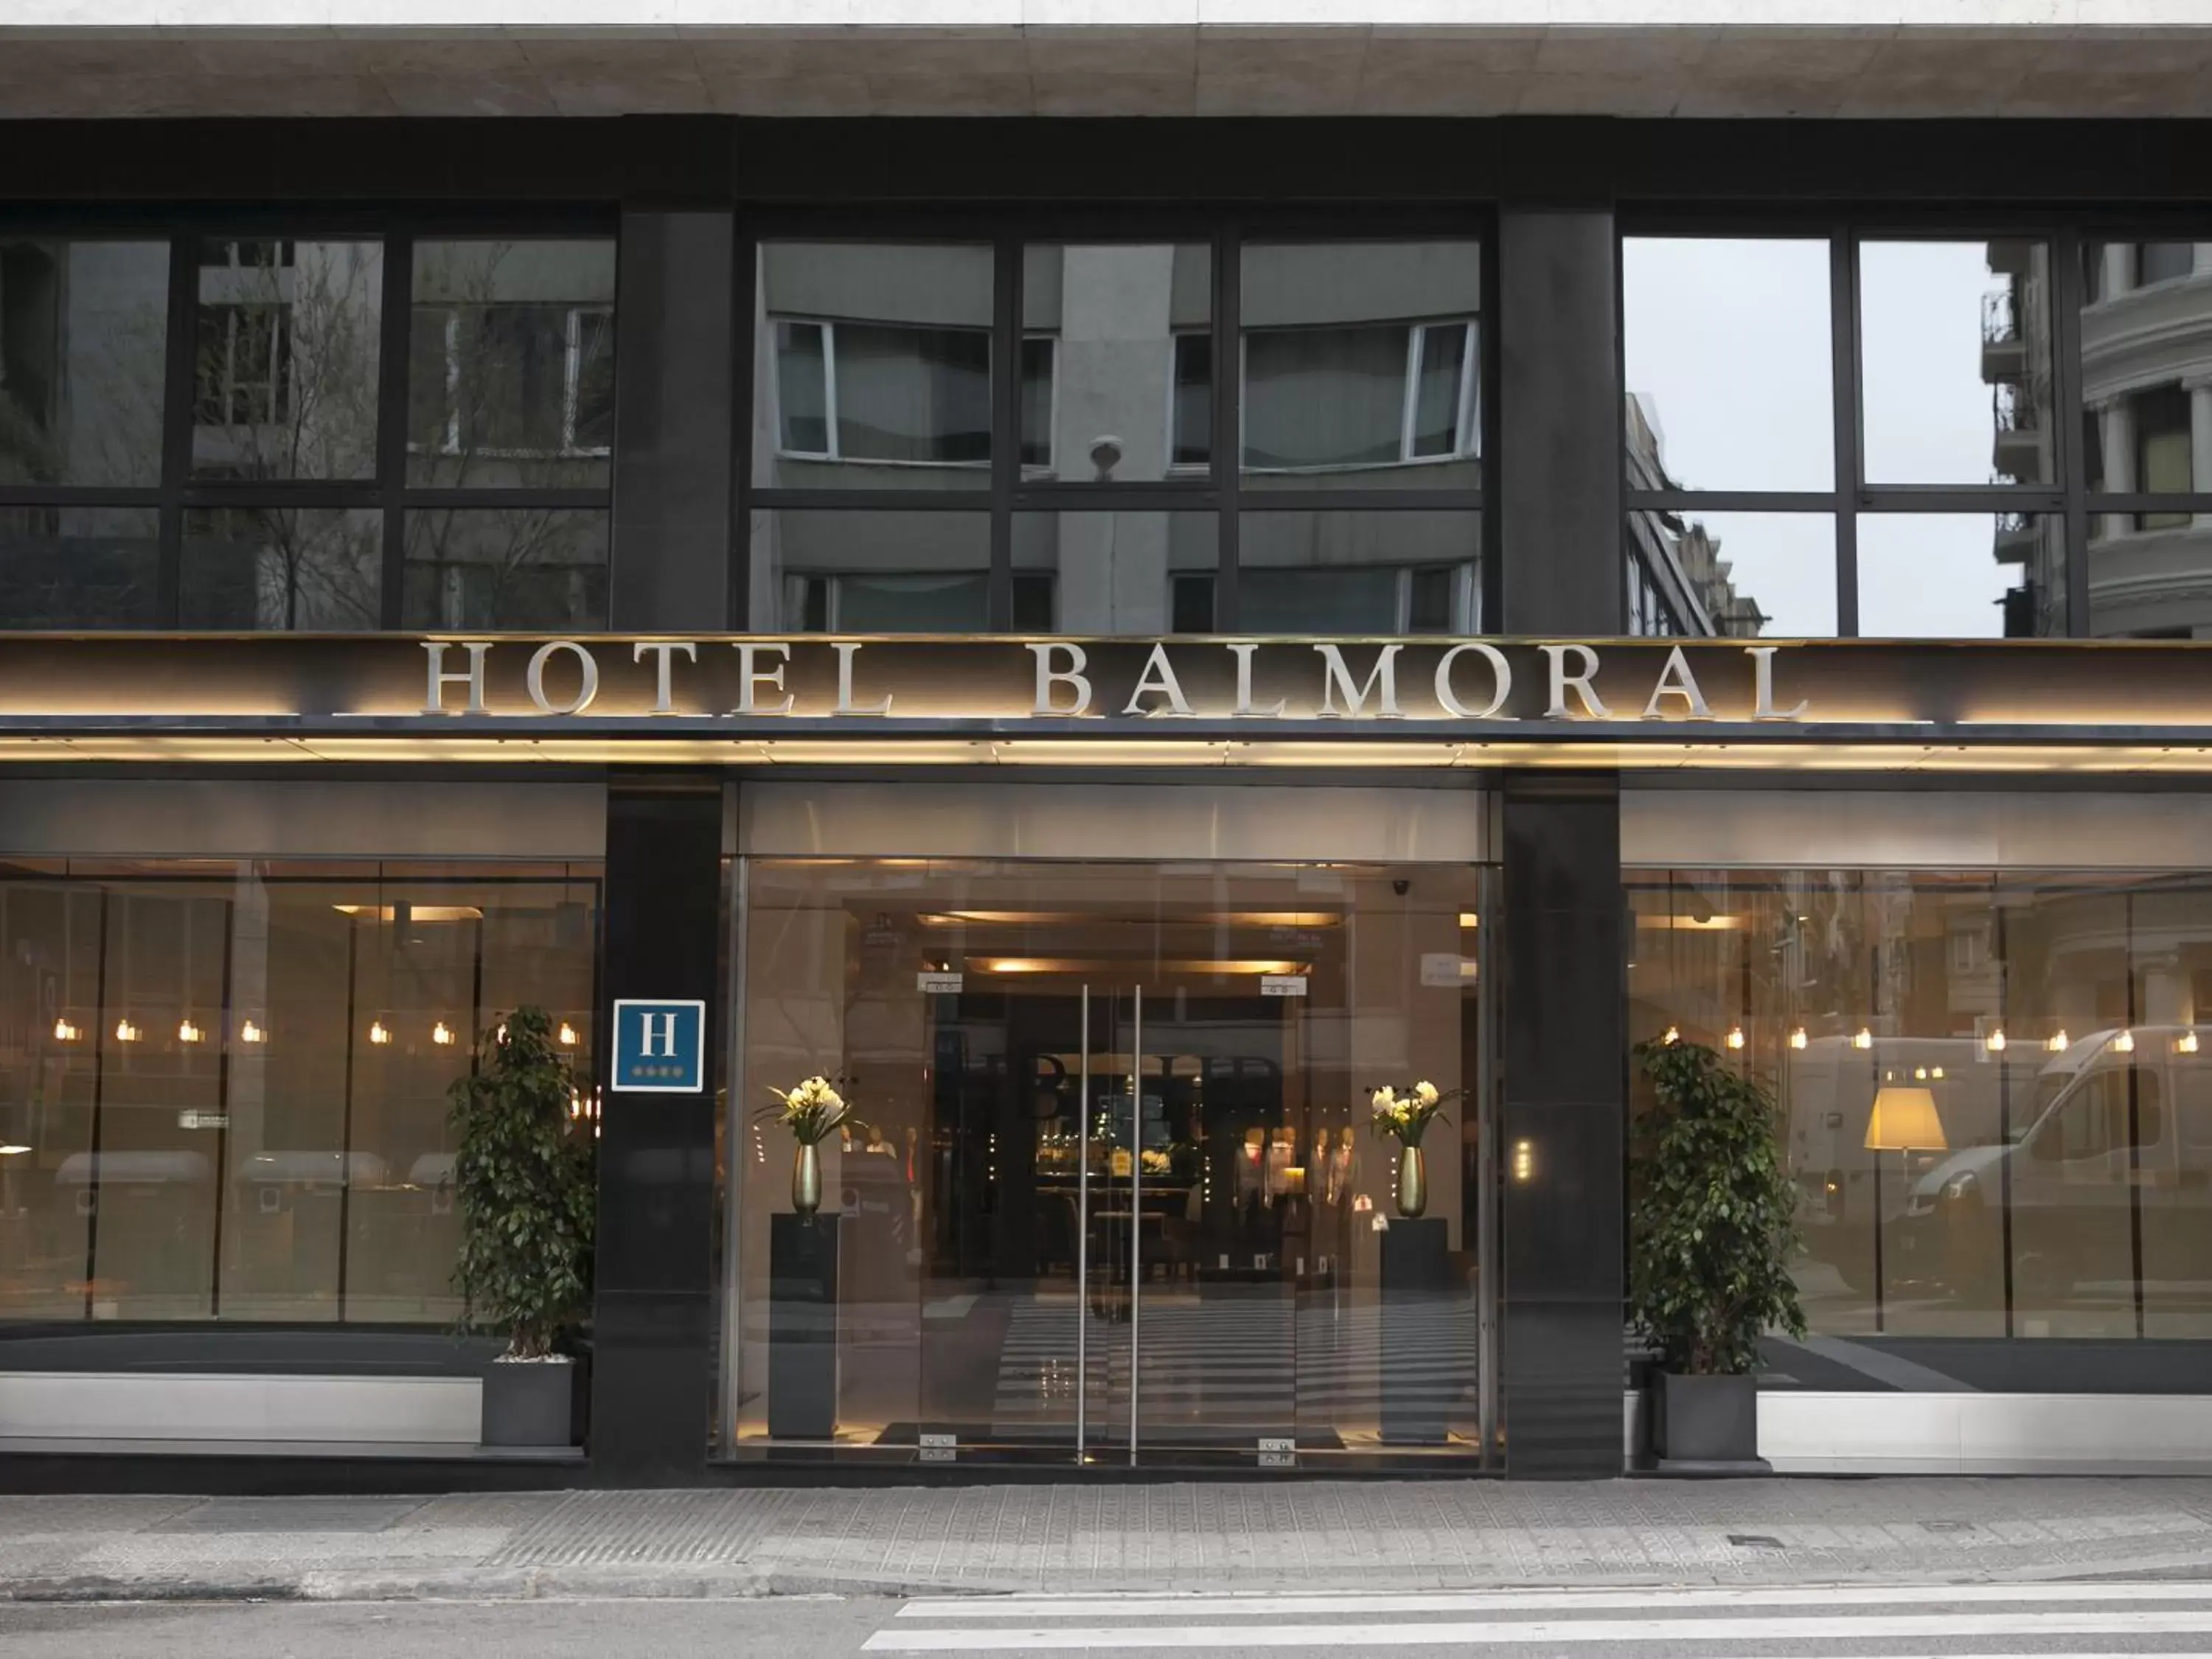 Facade/entrance in Hotel Balmoral